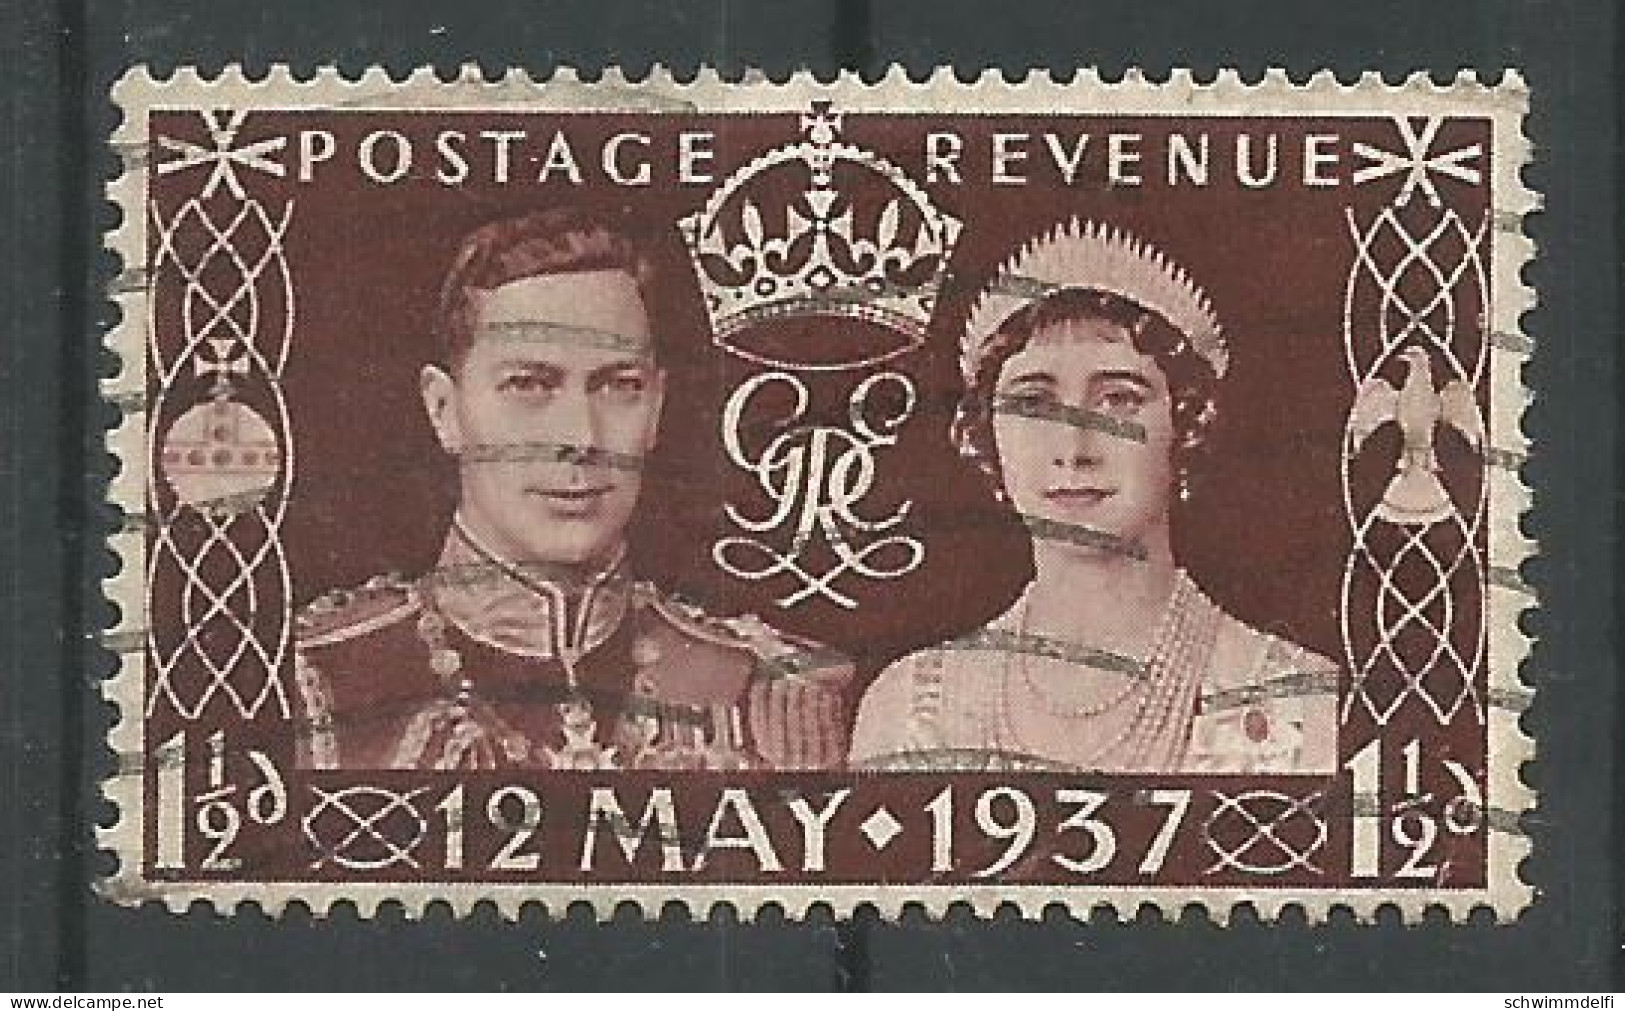 GRAN BRETAÑA - GROSSBRITANNIEN - 12. DE MAYO DE 1937 - KROENUNG KOENIG GOERG VI.  - CORONACIÓN DEL REY JORGE VI. - USO - Used Stamps